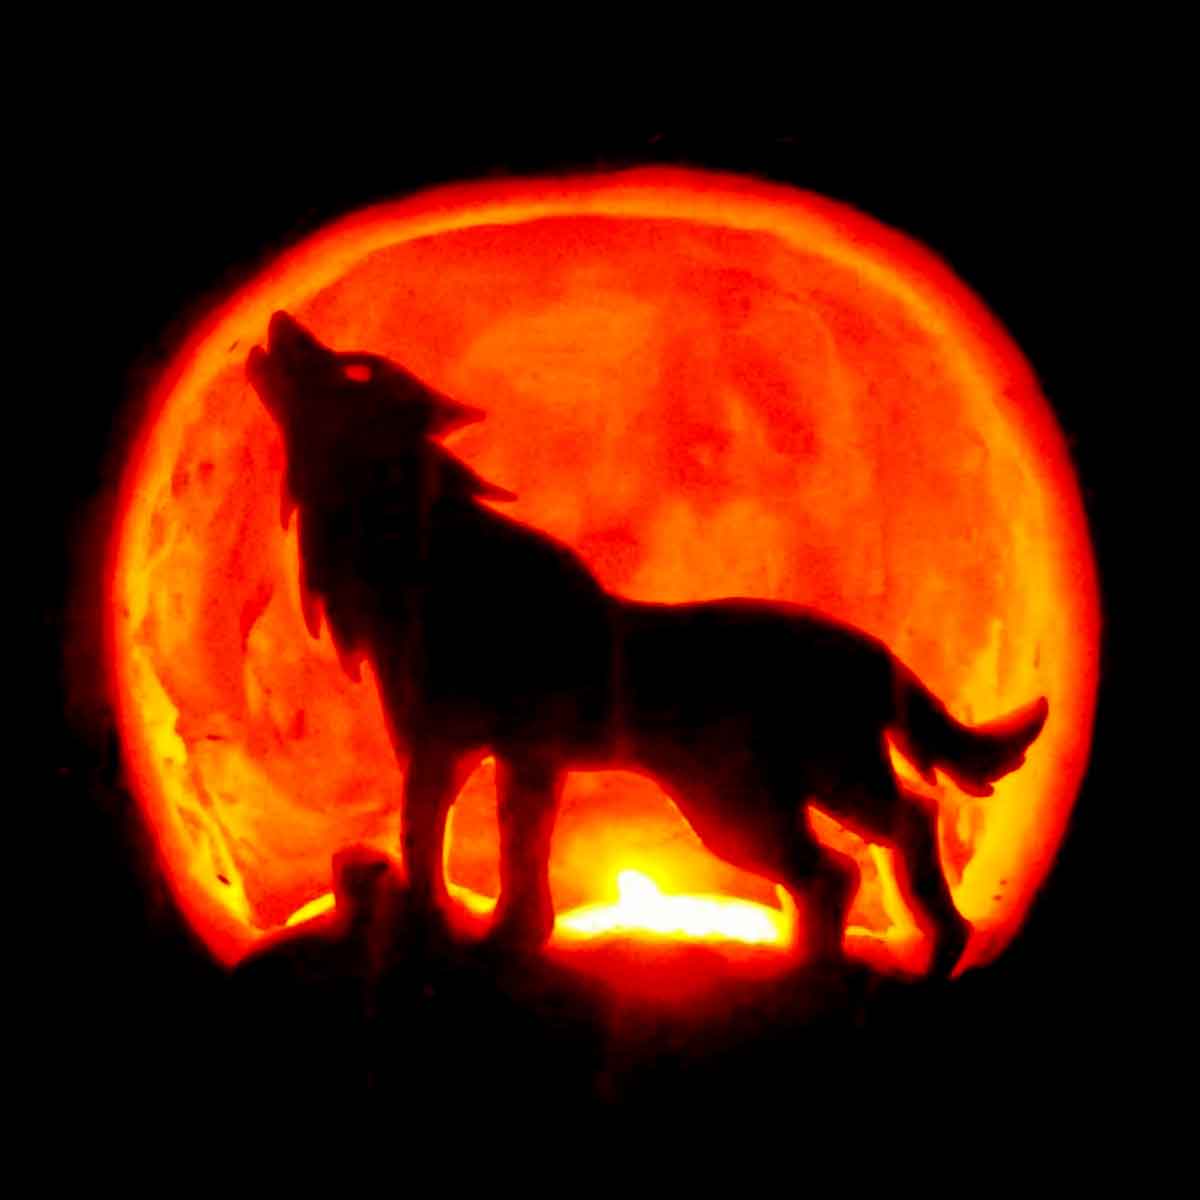 wolf pumpkin carving ideas